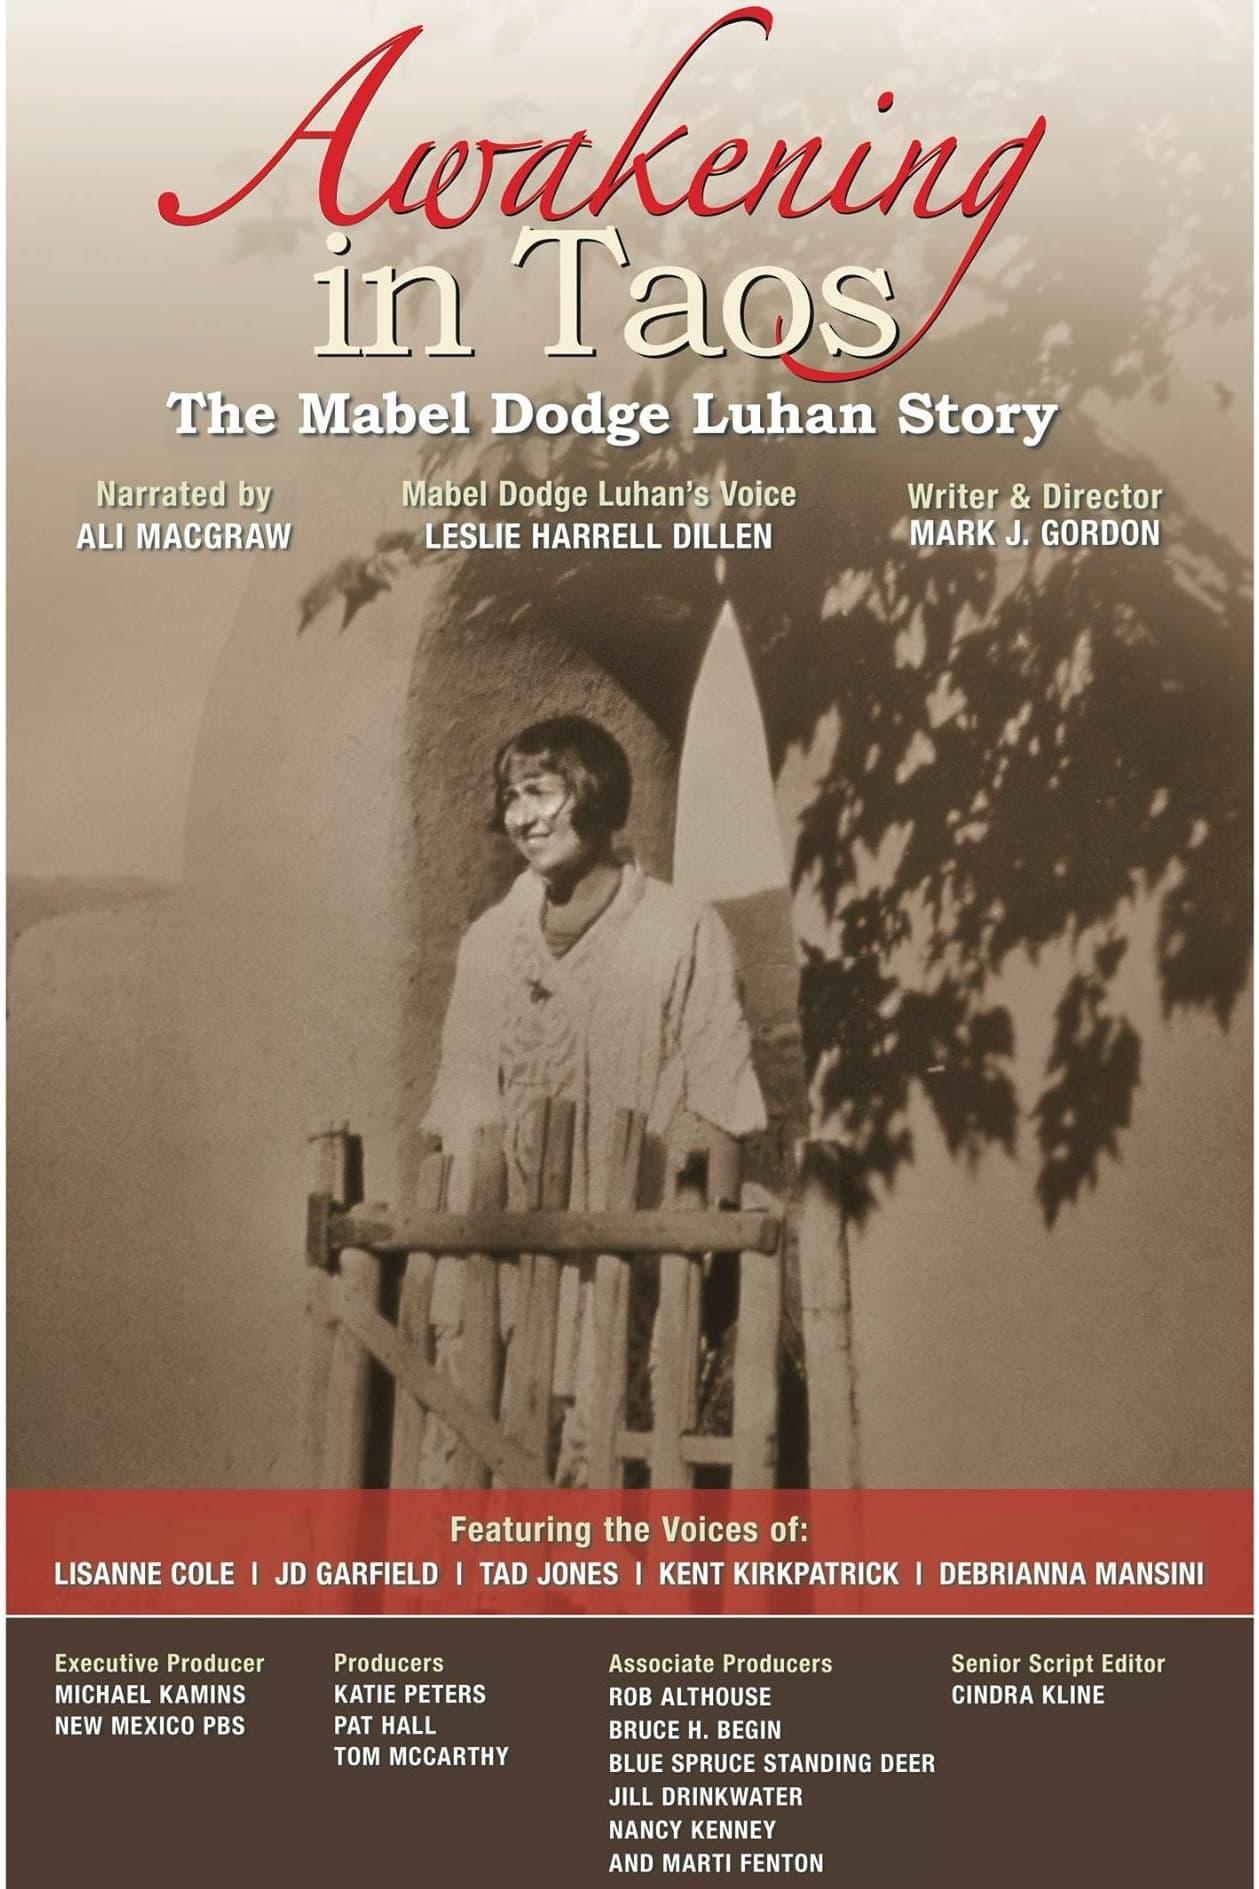 Awakening in Taos: The Mabel Dodge Luhan Story poster